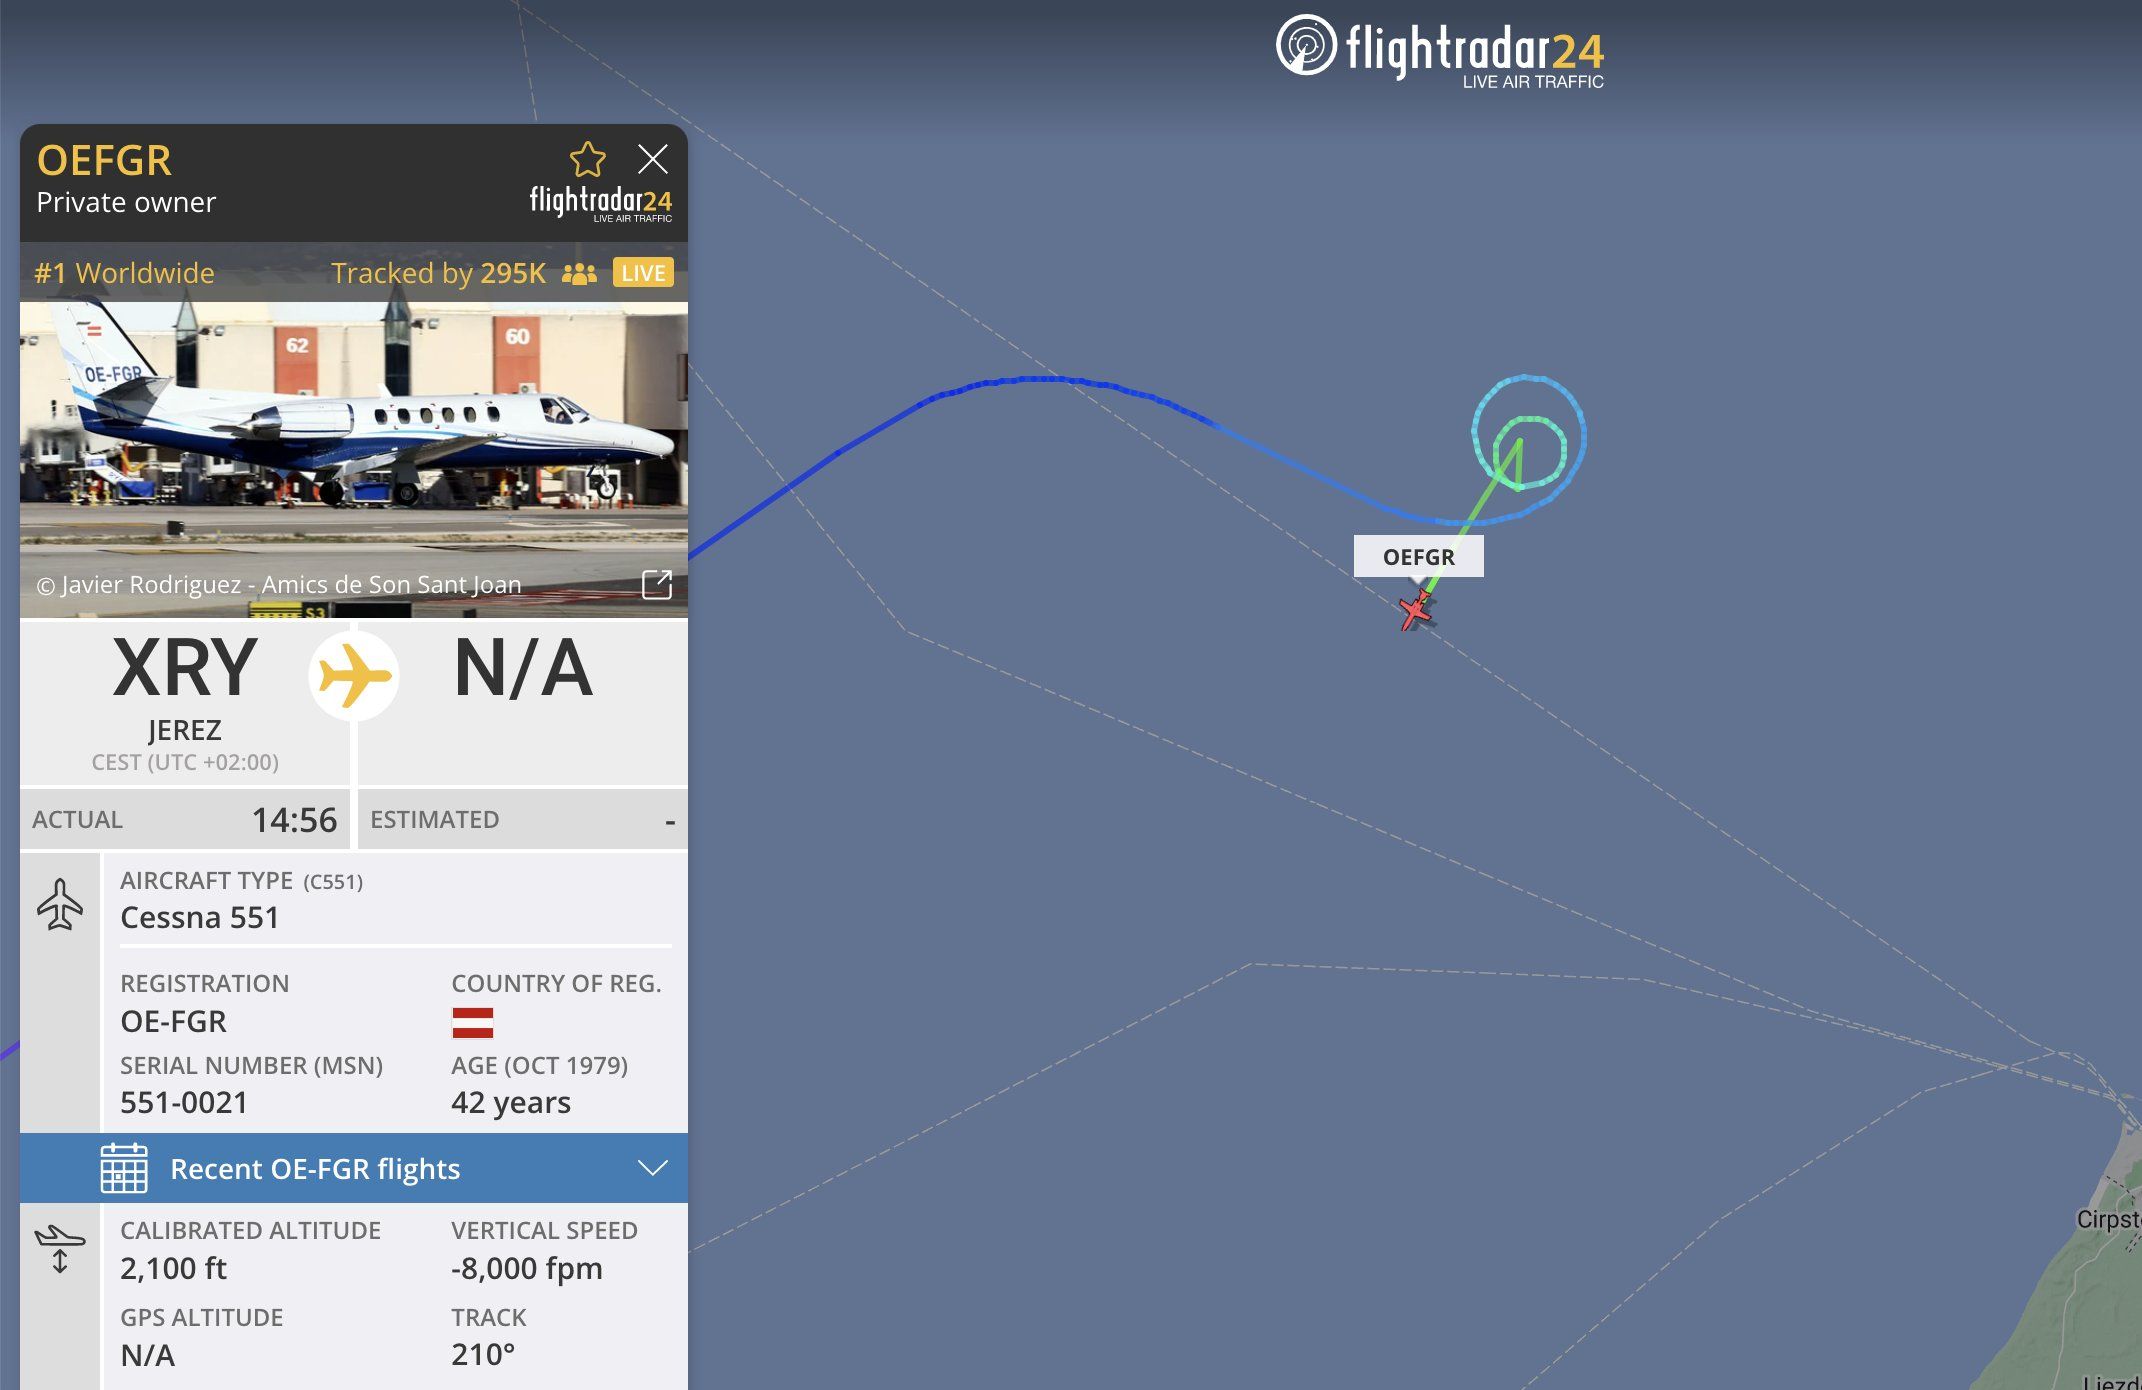 La aeronave, un avión Cessna 551, (OE-FGR) había despegado de Jerez sobre las 14:56 horas